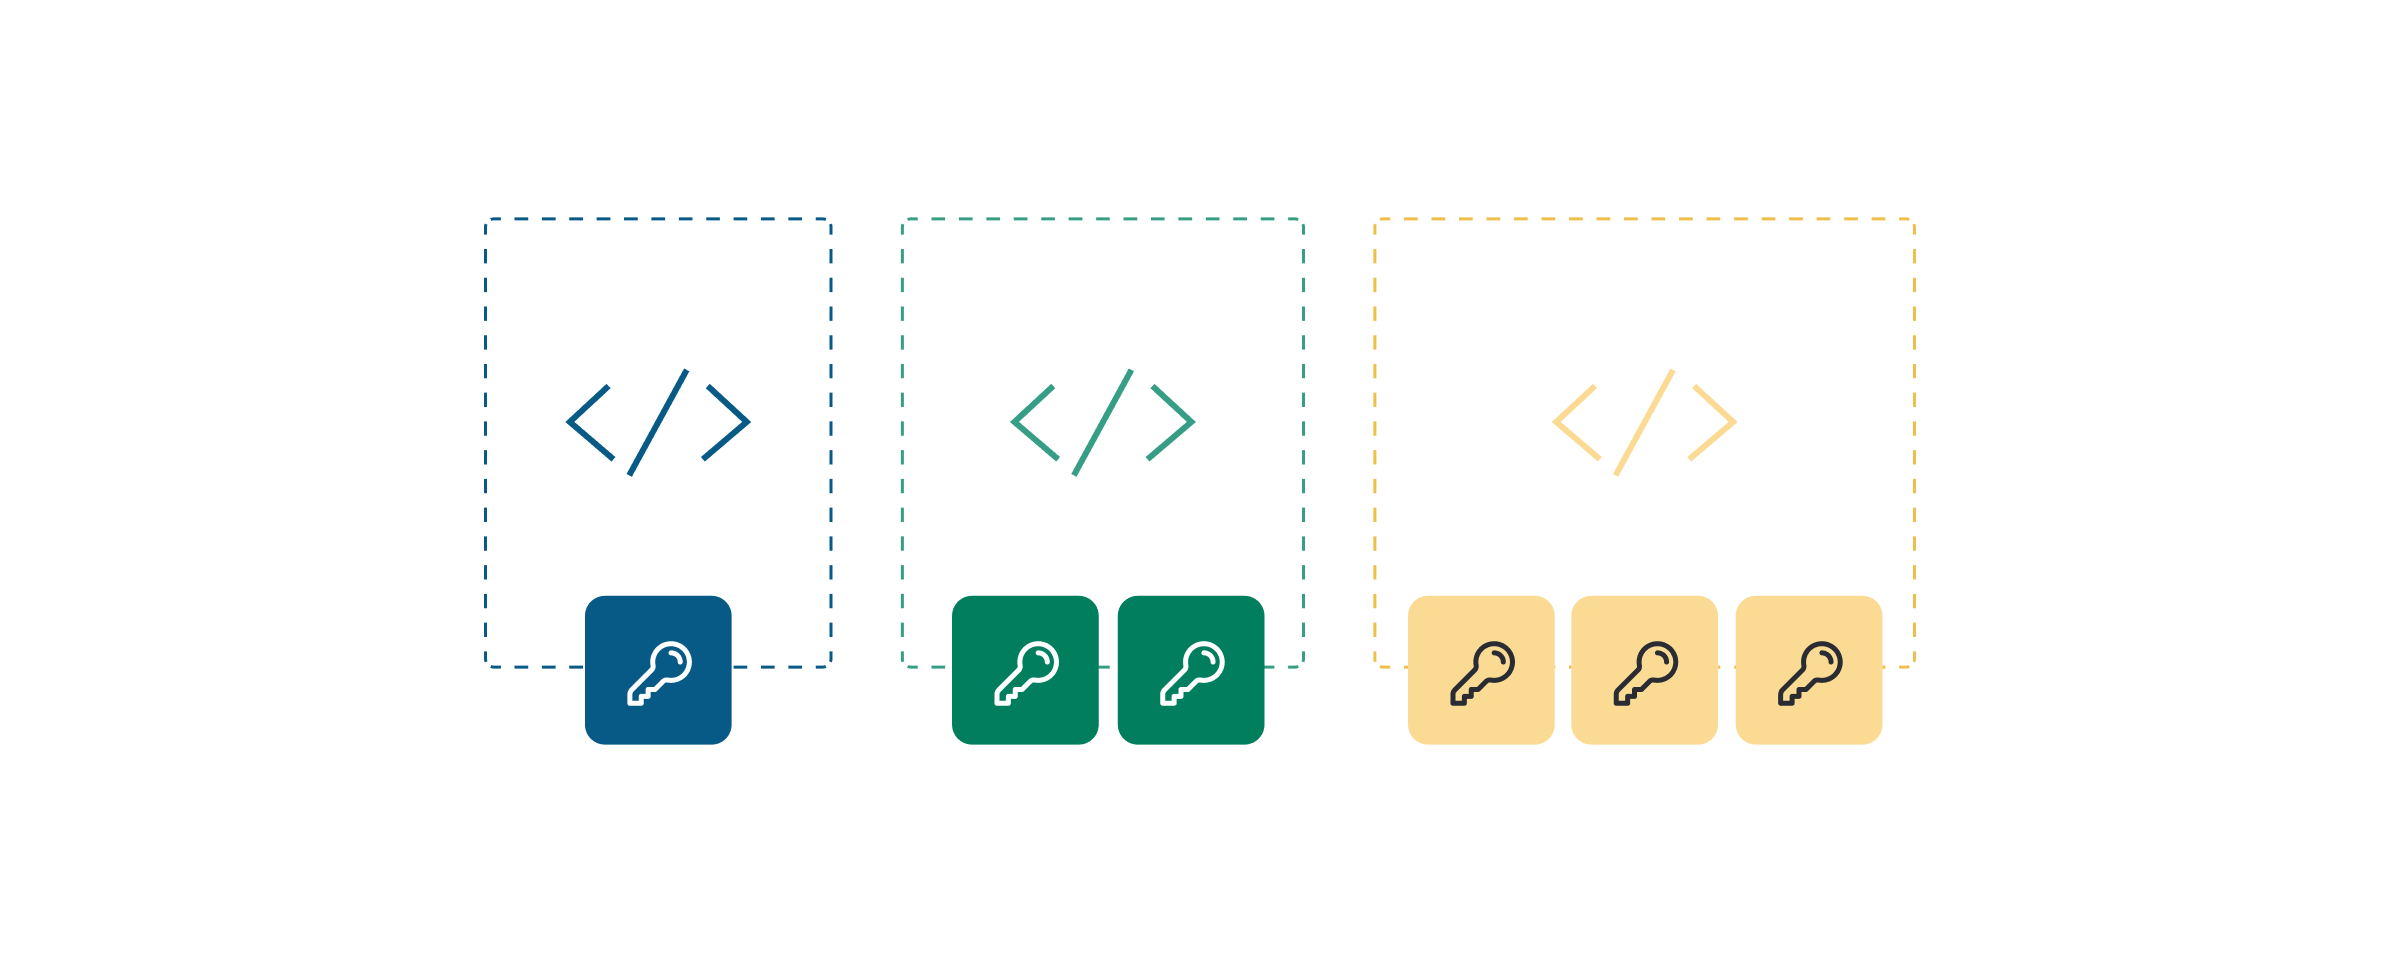 Ilustración que representa la seguridad de las claves de API y distintos tipos de uso en varios colores